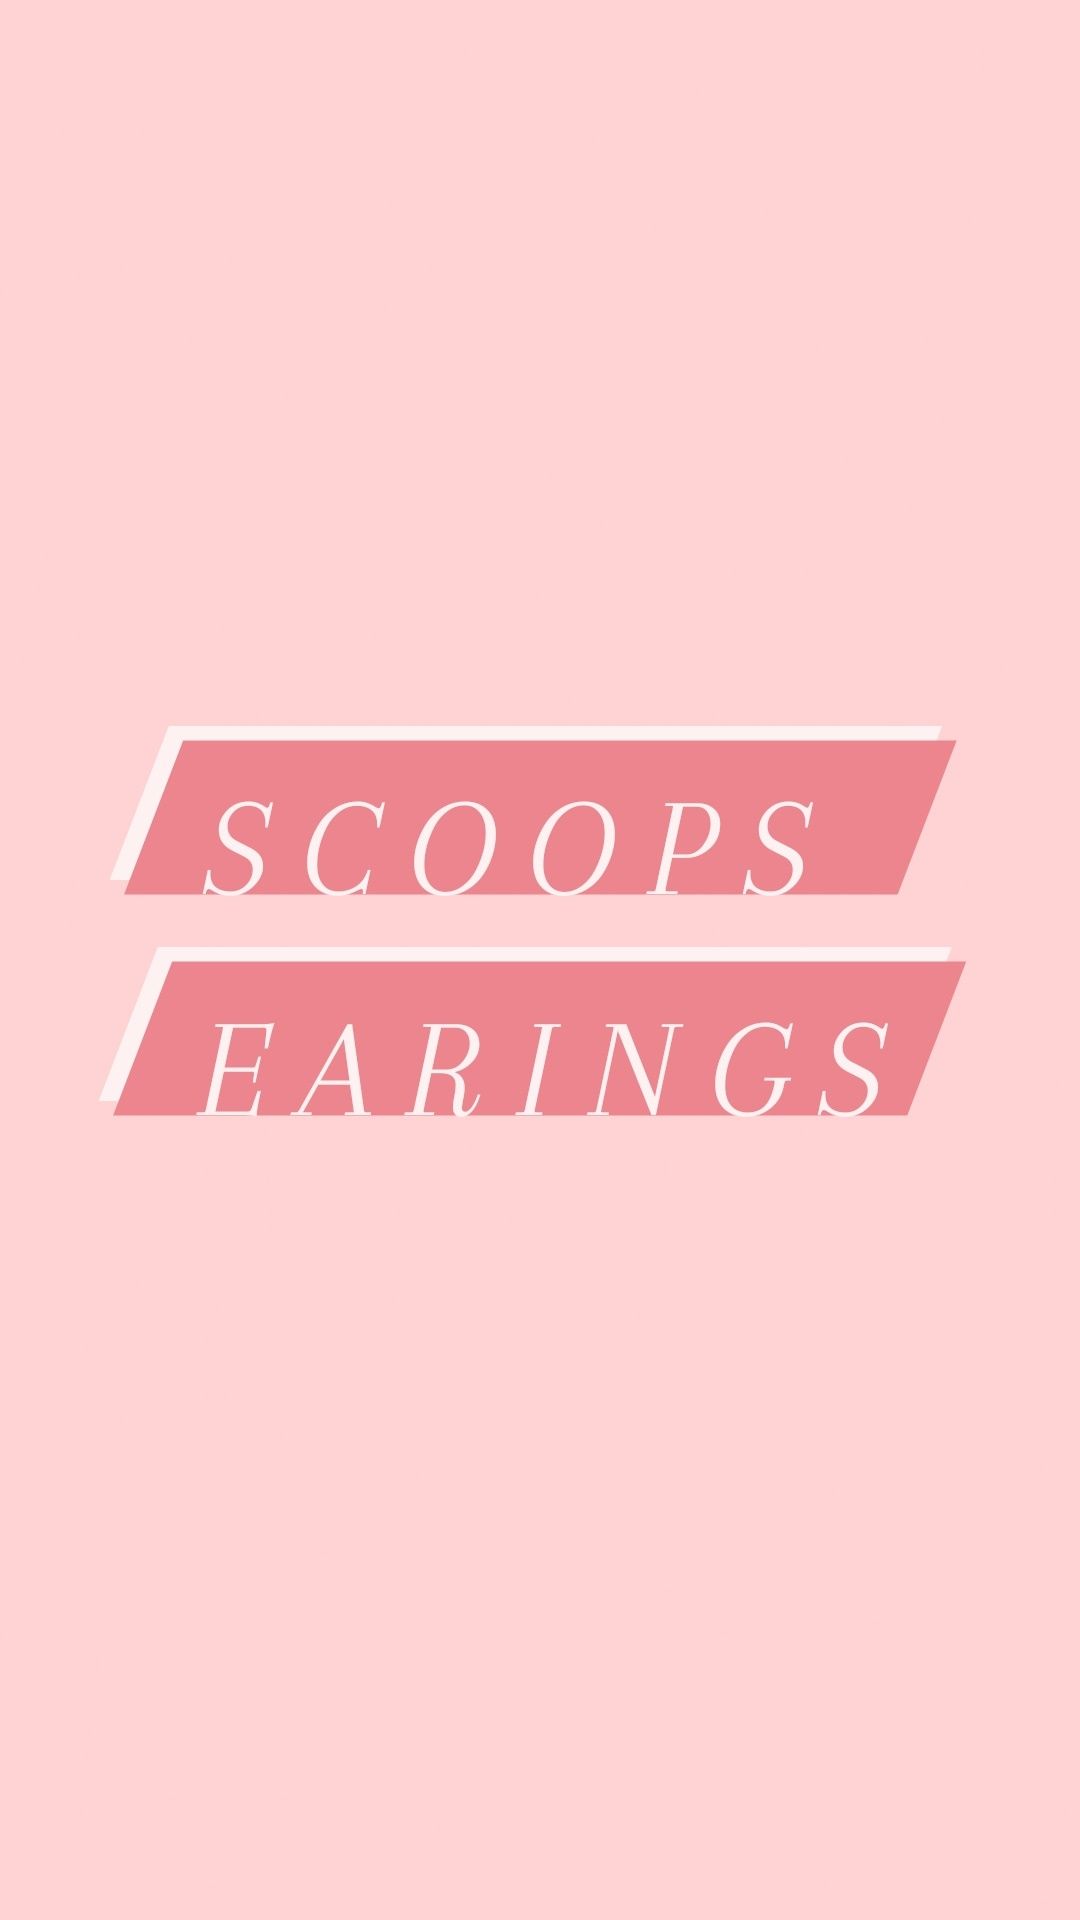 Scoops earings .